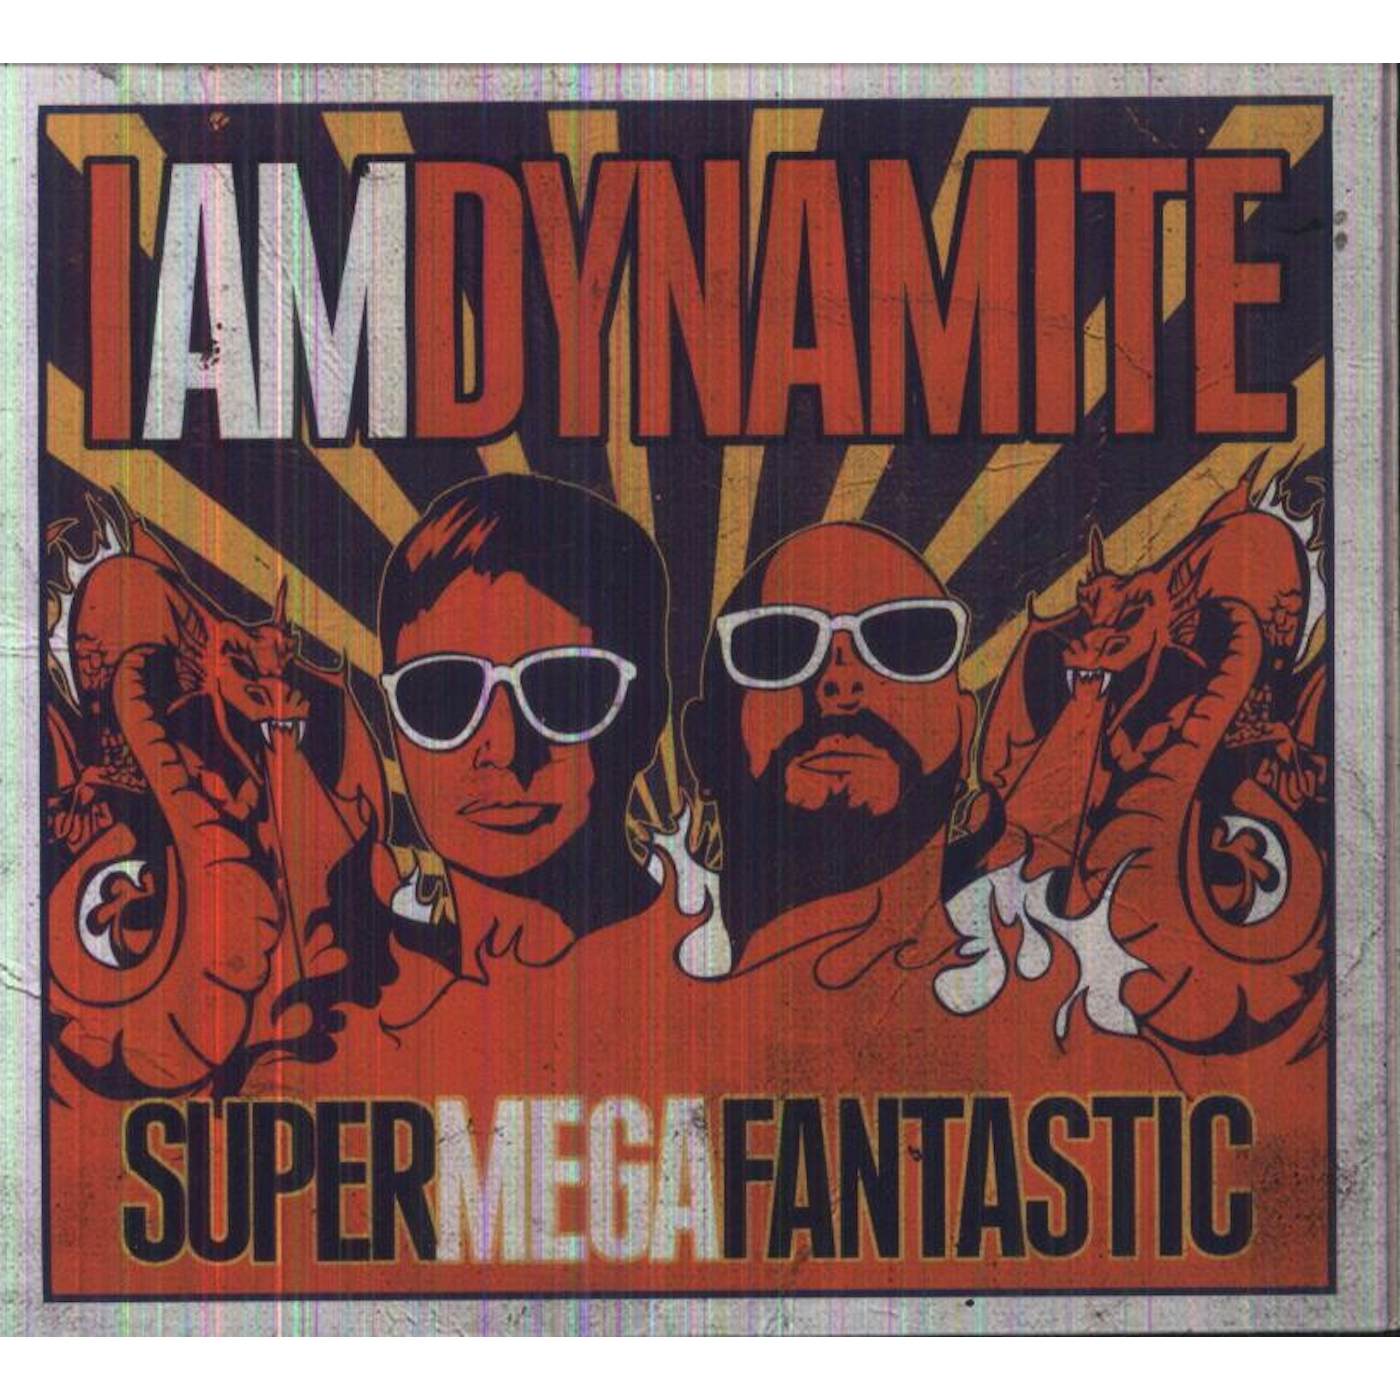 IAMDYNAMITE SUPERMEGAFANTASTIC CD